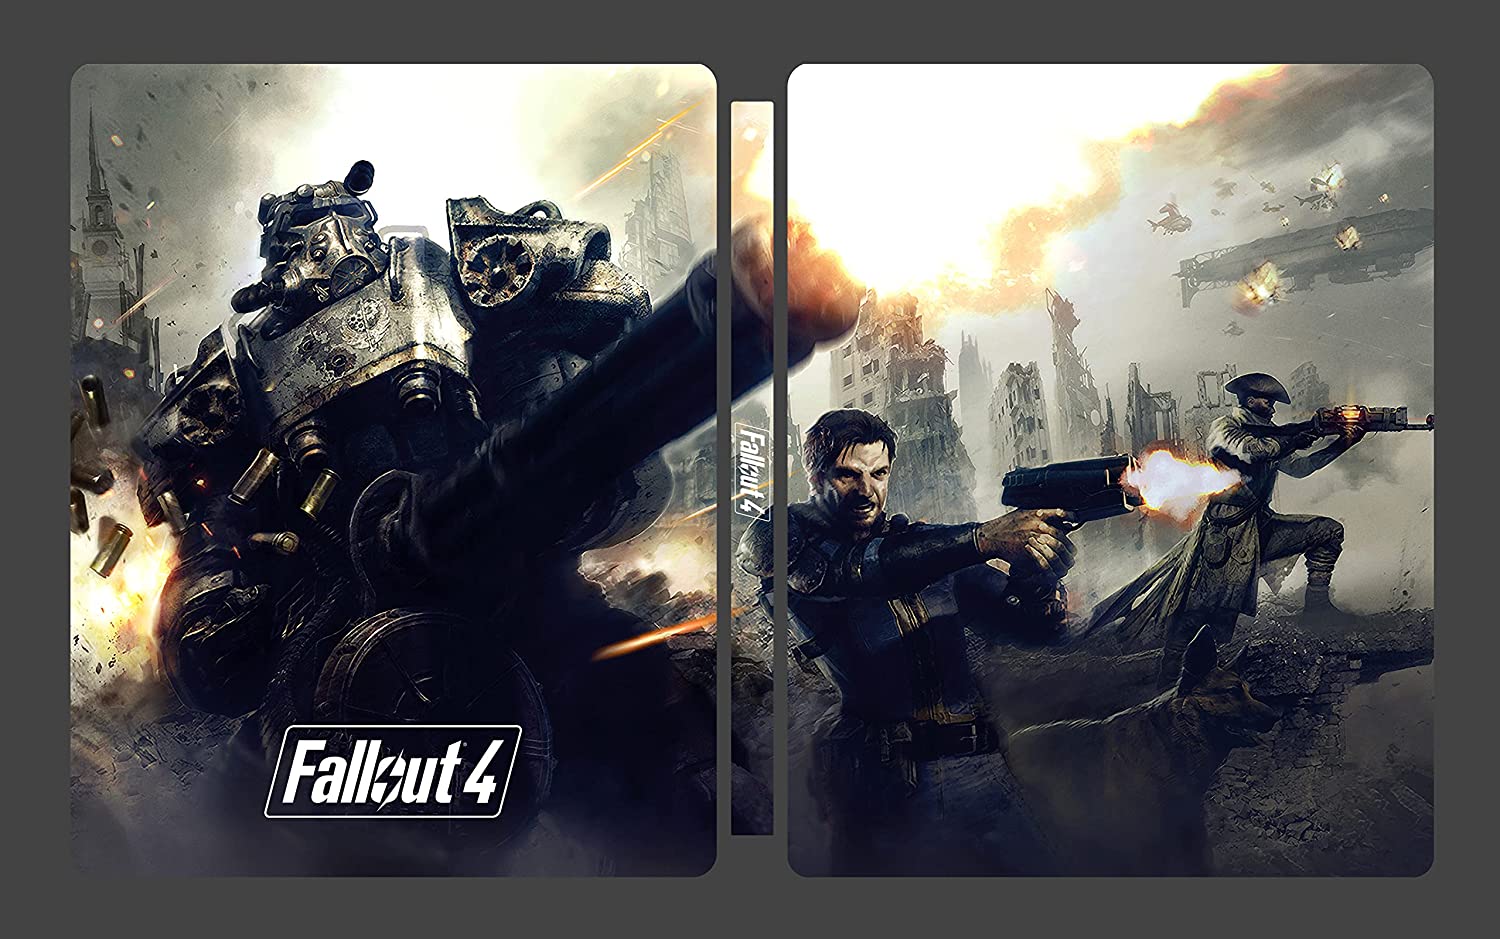 specjalne 4 Steelbook Edition Fallout Kolekcjonerki październiku wydanie - zadebiutuje GOTY W